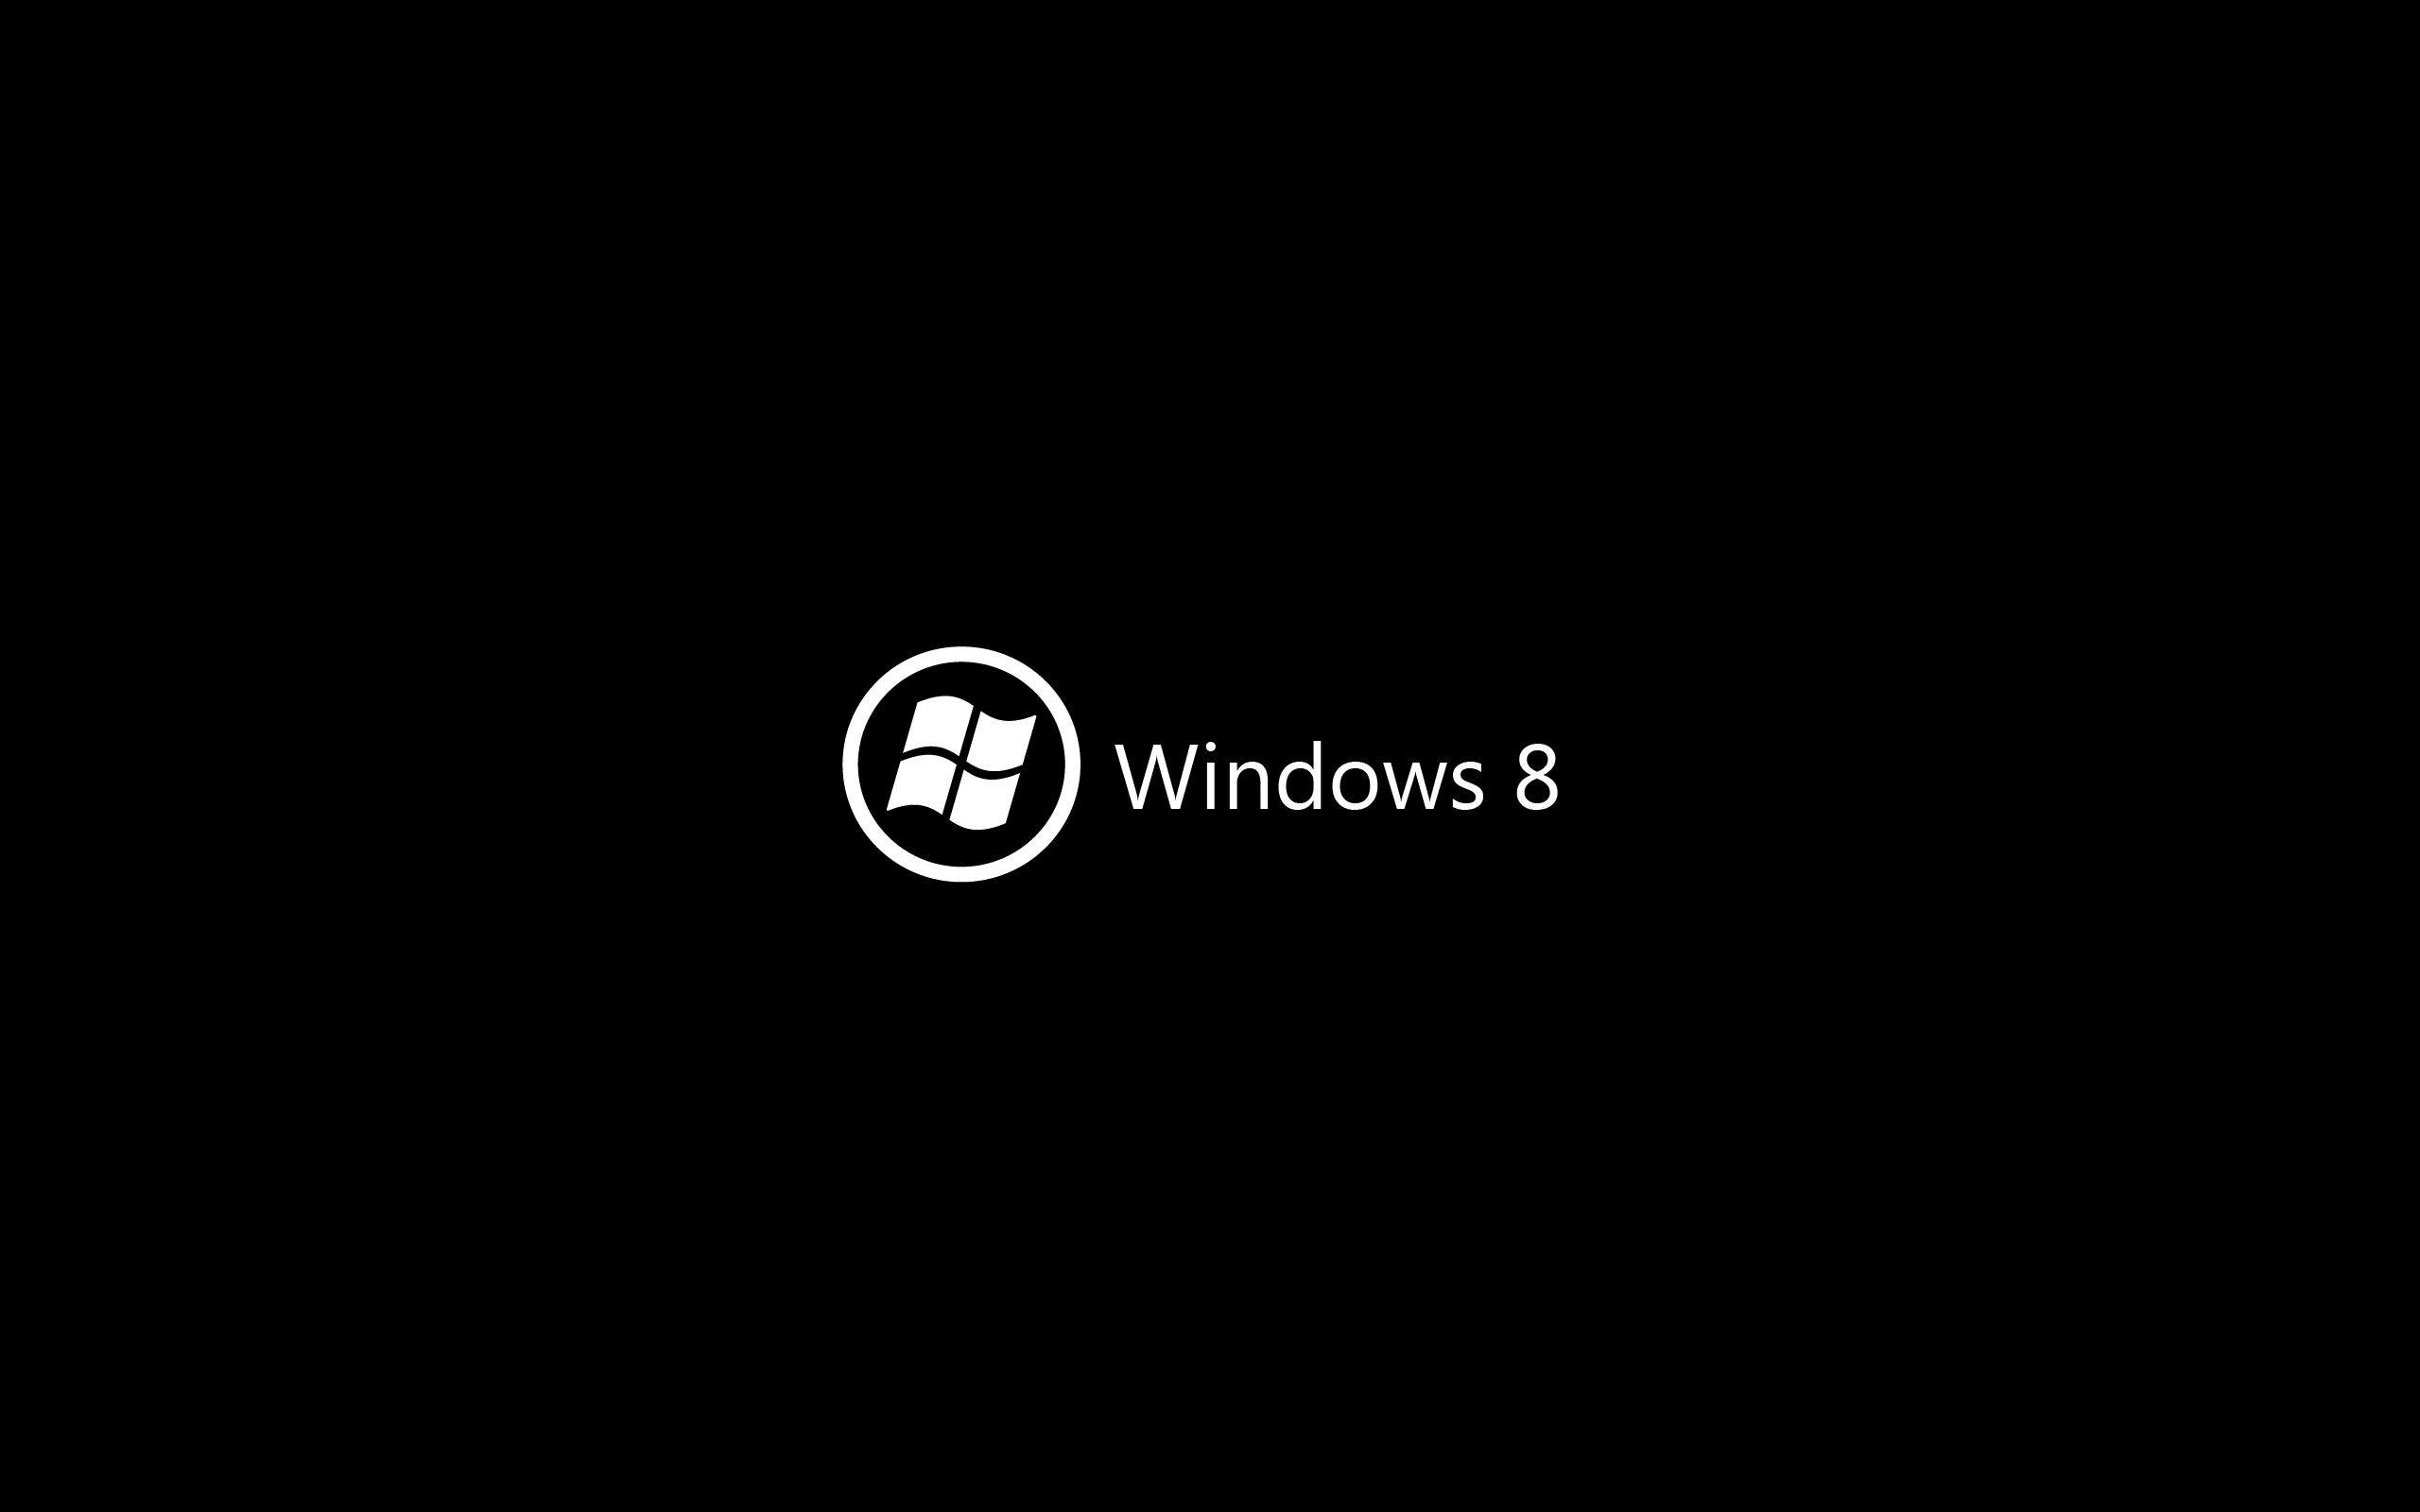 черный цвет, минималистичный, DeviantART, Windows 8 - обои на рабочий стол